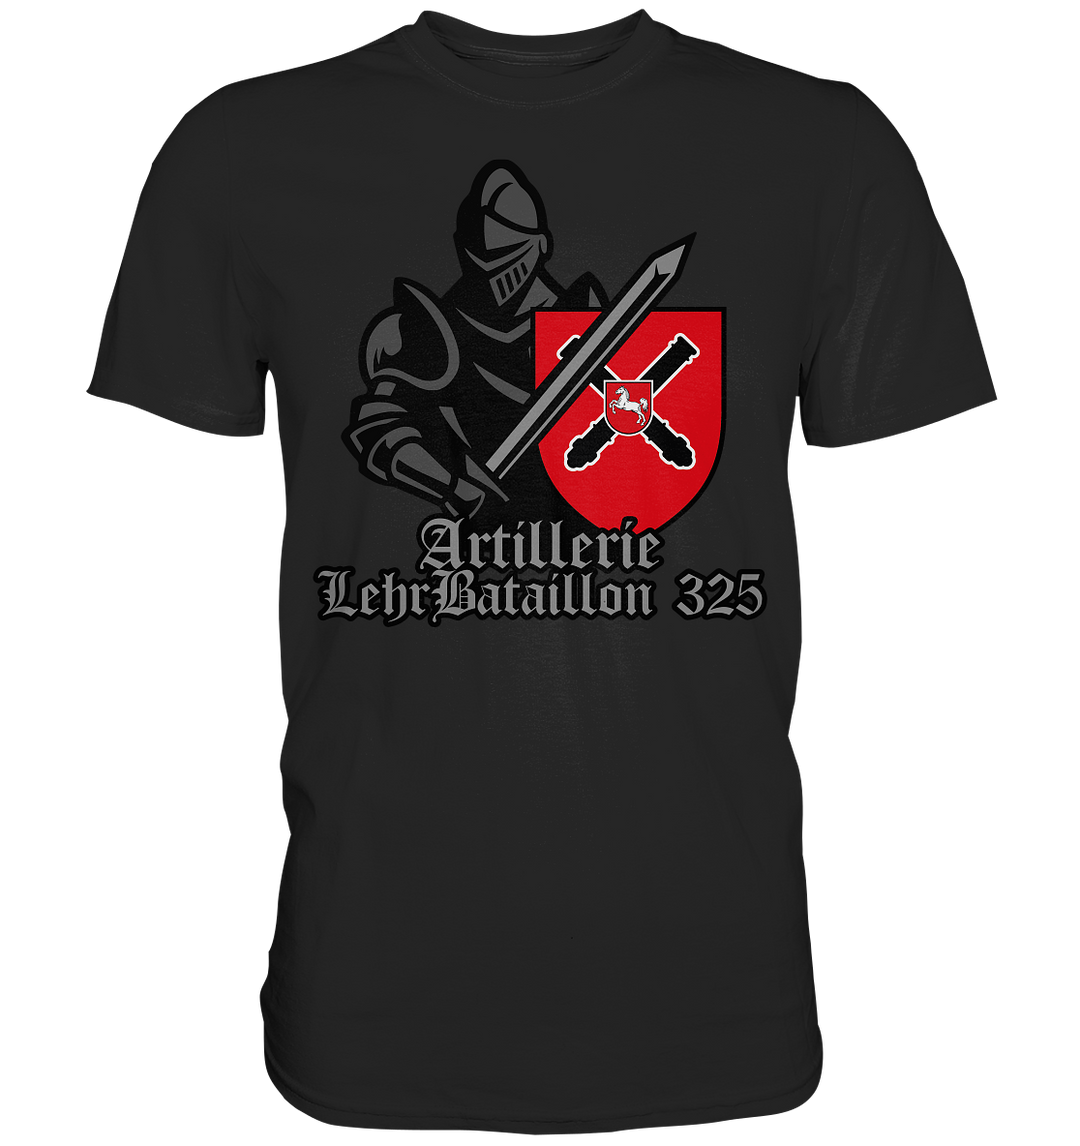 "ArtLehrBtl 325 - Ritter" - Premium Shirt